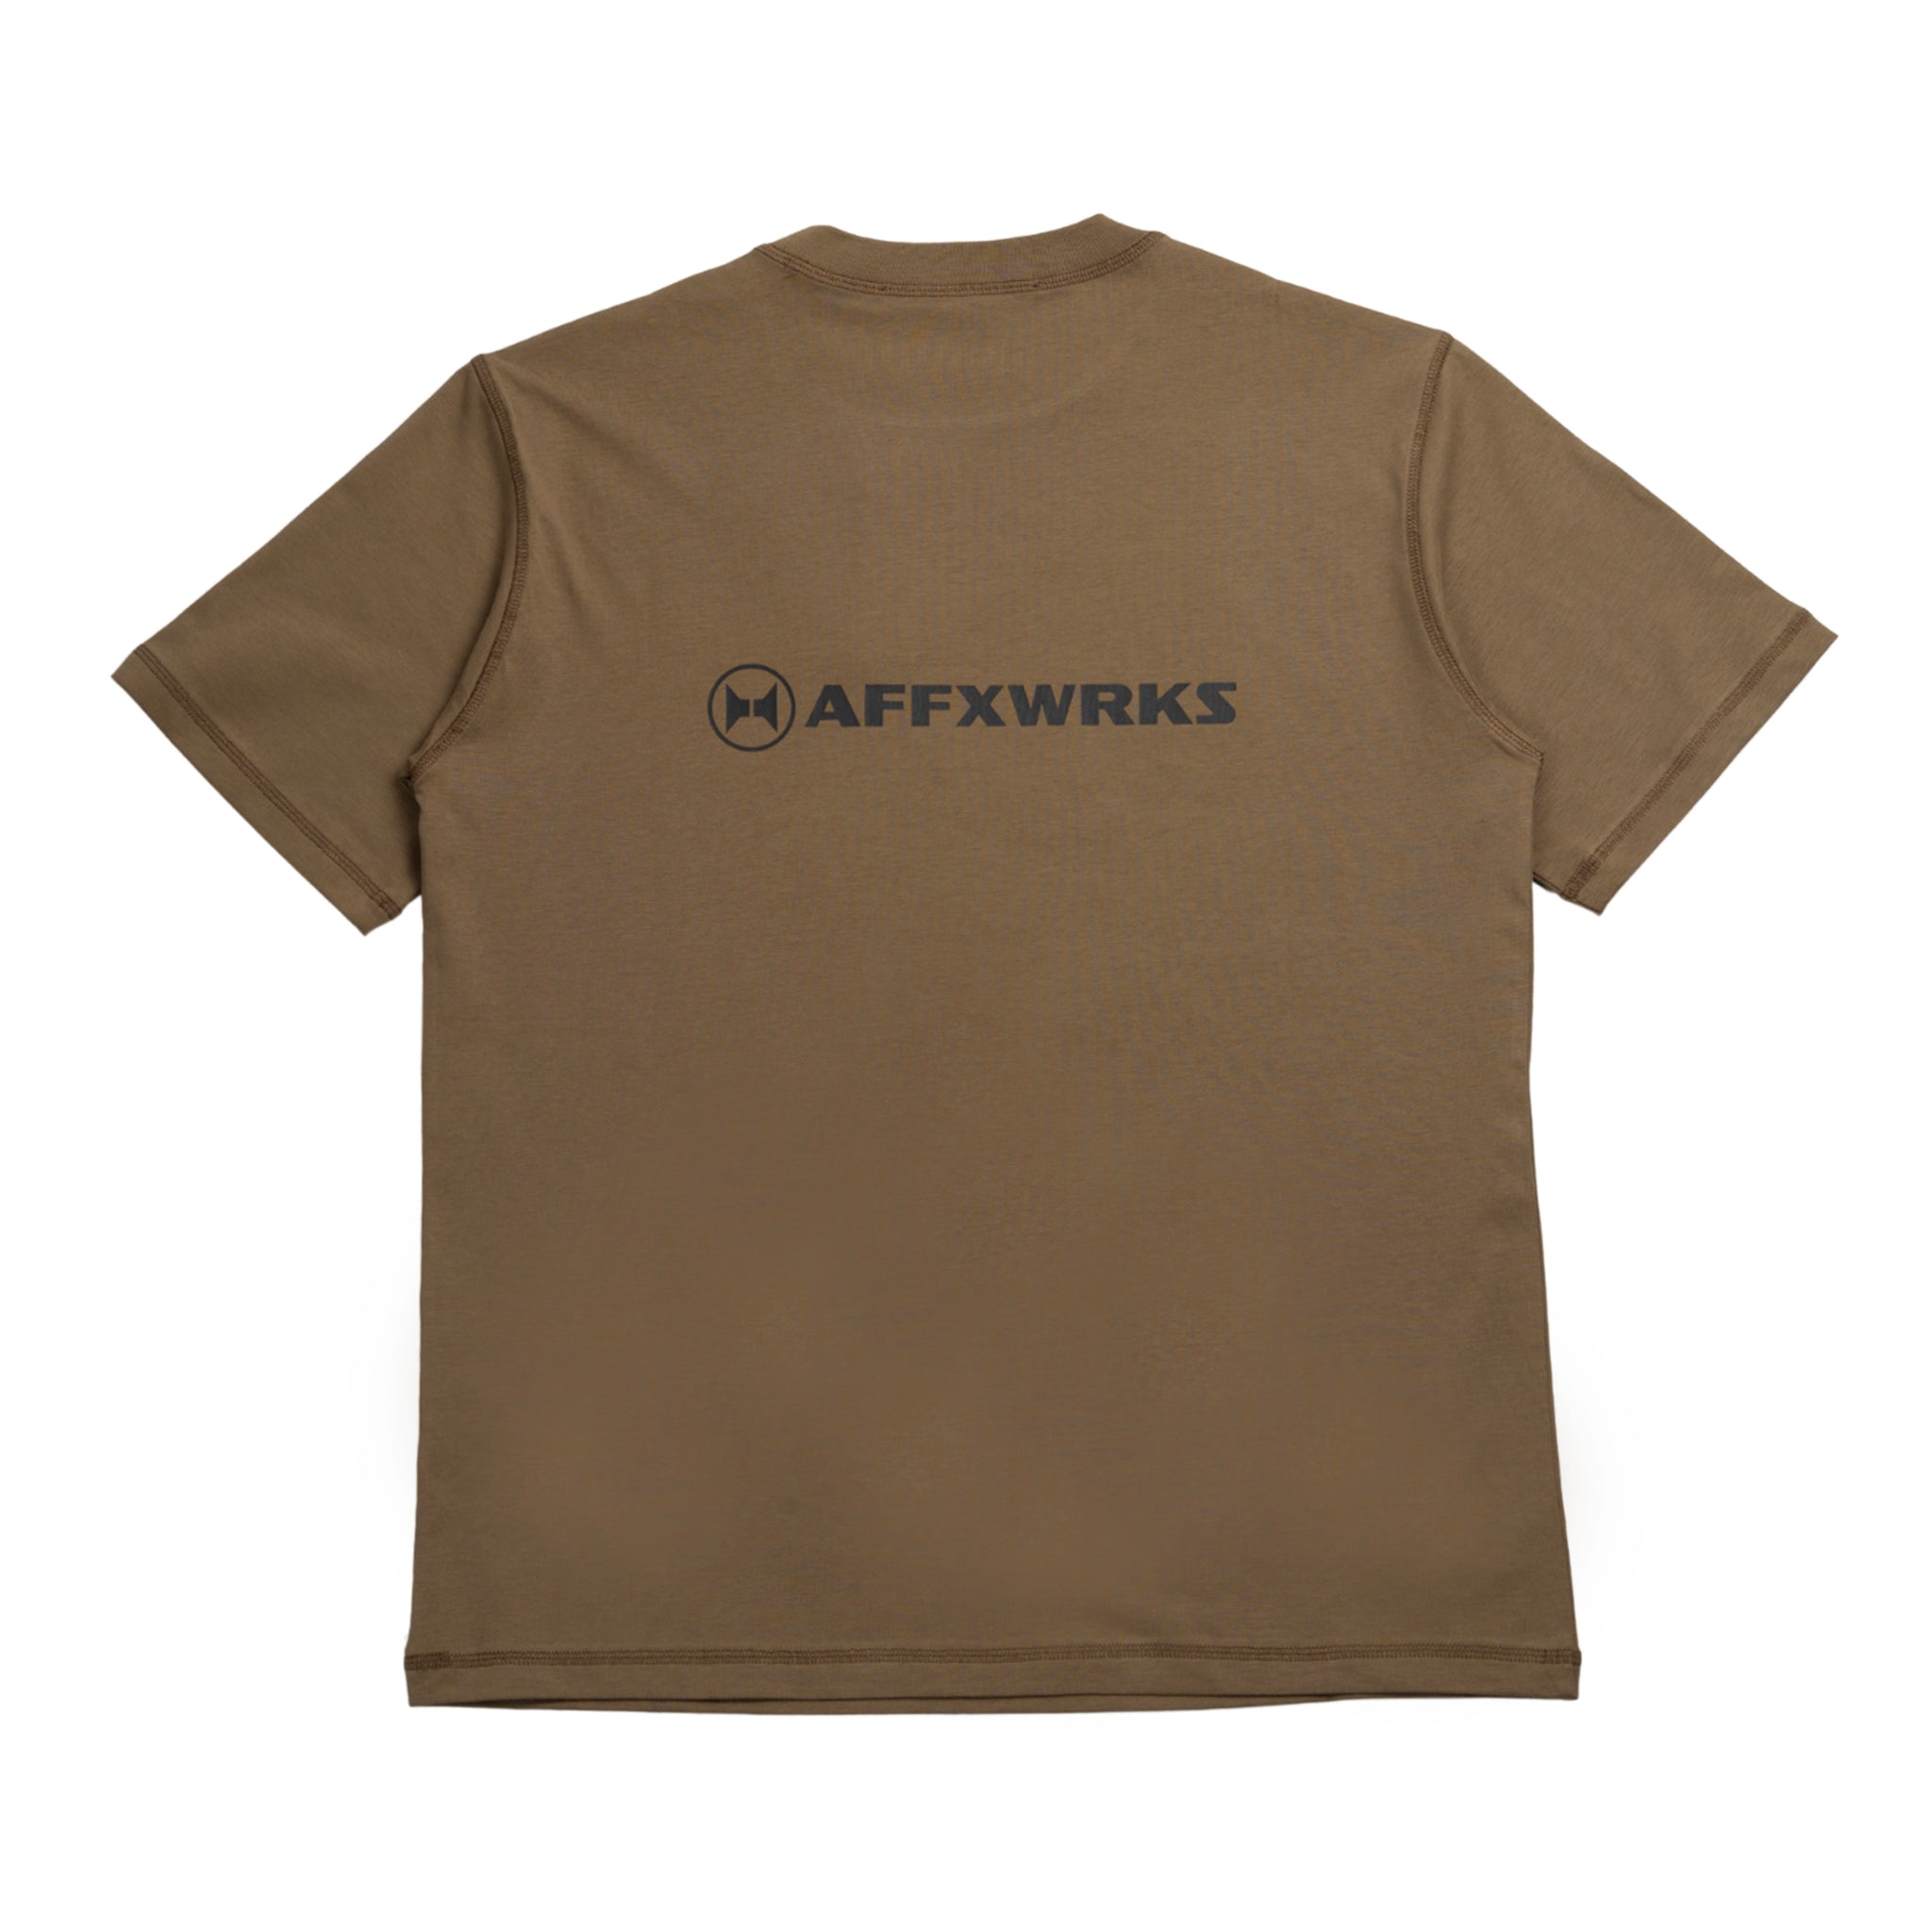 Af-Affxwrks t-shirt in cotone in beige